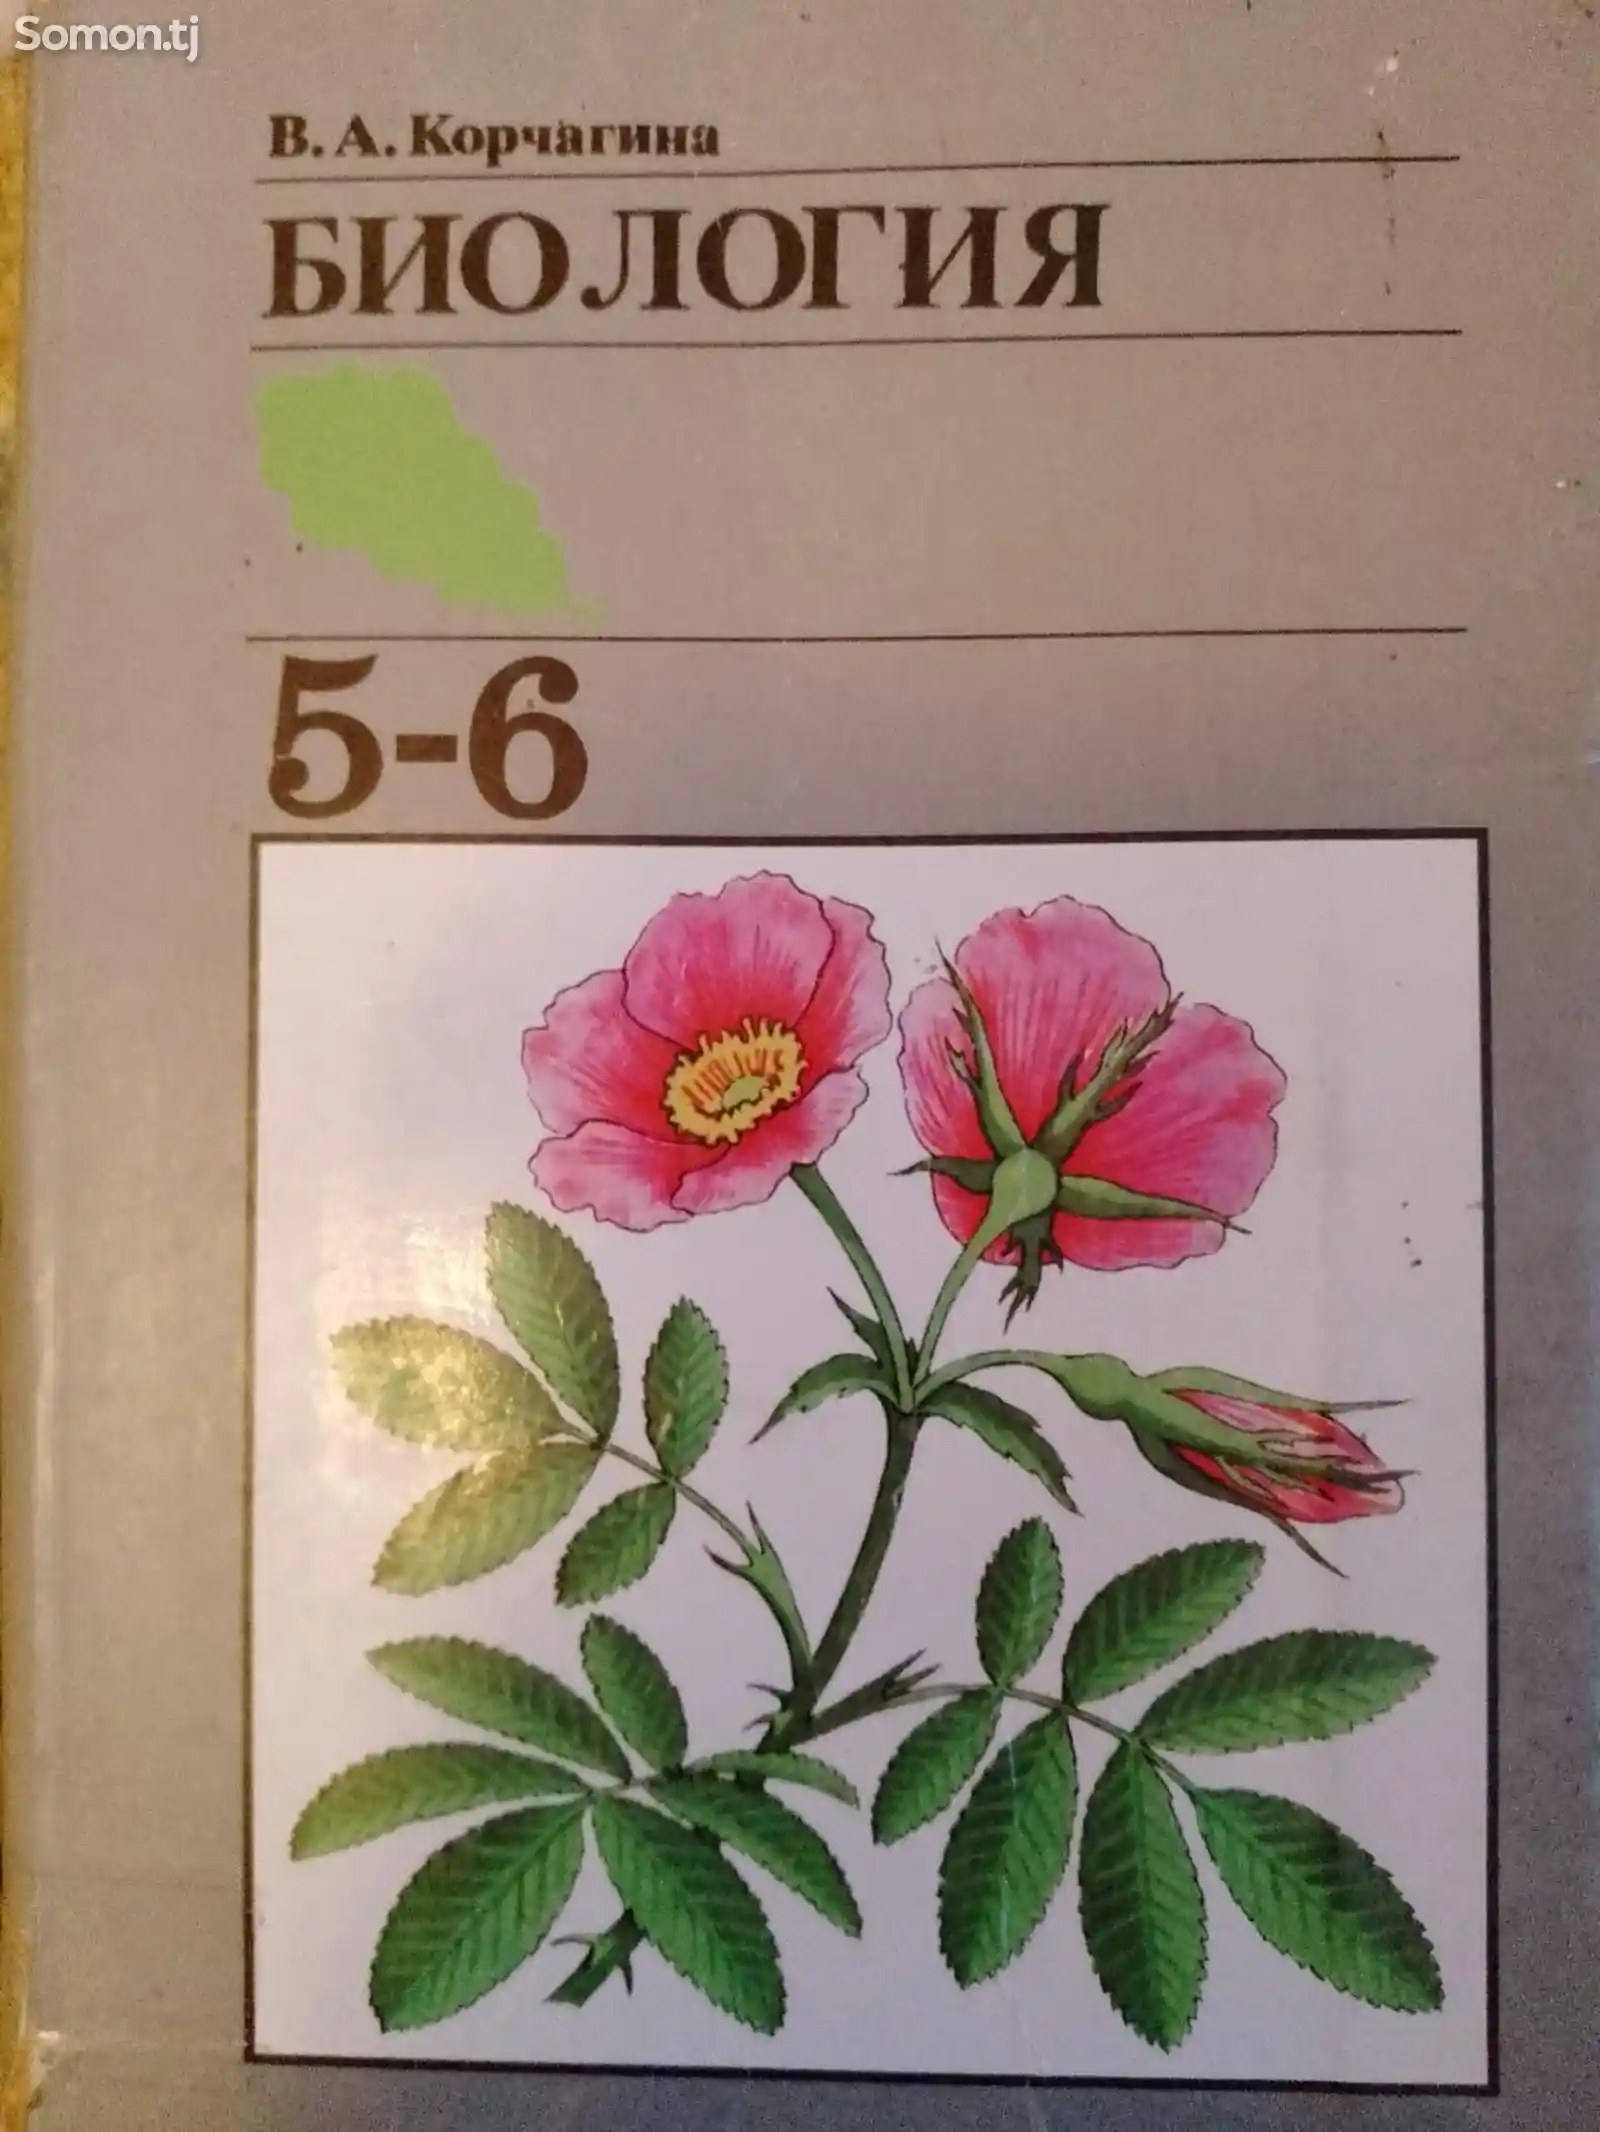 Книга по биологии для 5-6 класса на русском-1